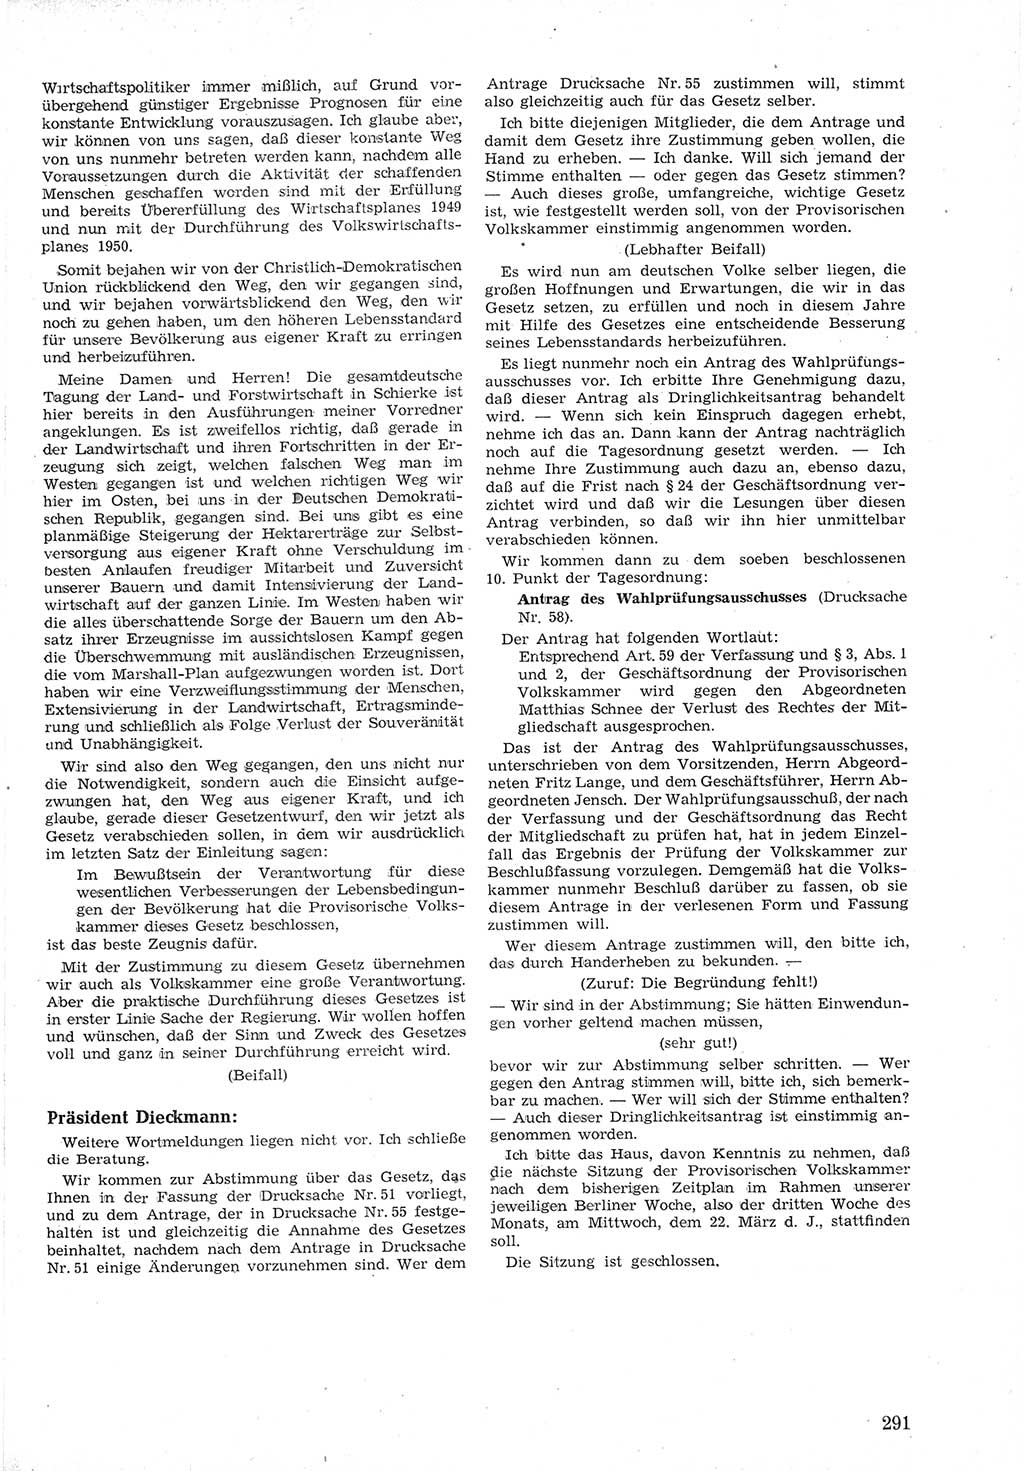 Provisorische Volkskammer (VK) der Deutschen Demokratischen Republik (DDR) 1949-1950, Dokument 305 (Prov. VK DDR 1949-1950, Dok. 305)